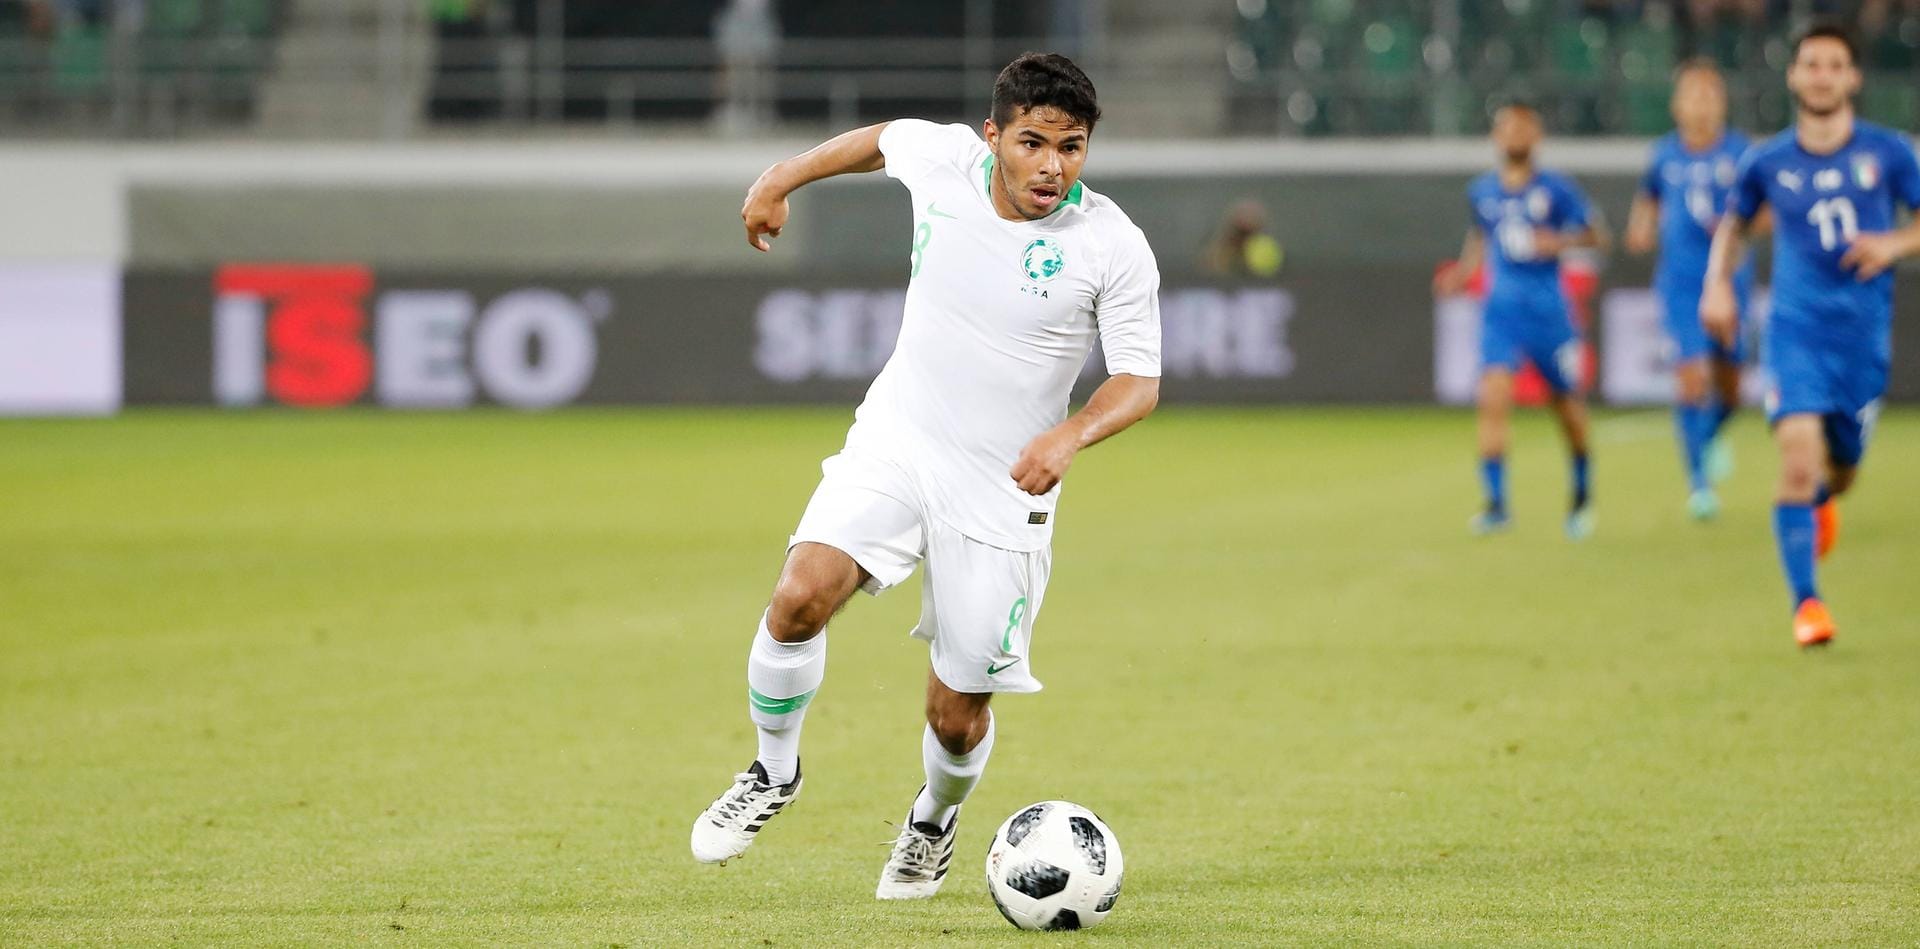 Yahya Al-Shehri (Saudi-Arabien): Gilt als eines der größten Talente Saudi-Arabiens. Der 27-jährige und nur 1,64 große Al-Shehri hat bereits in der spanischen Primera Division beim CD Leganés gespielt.